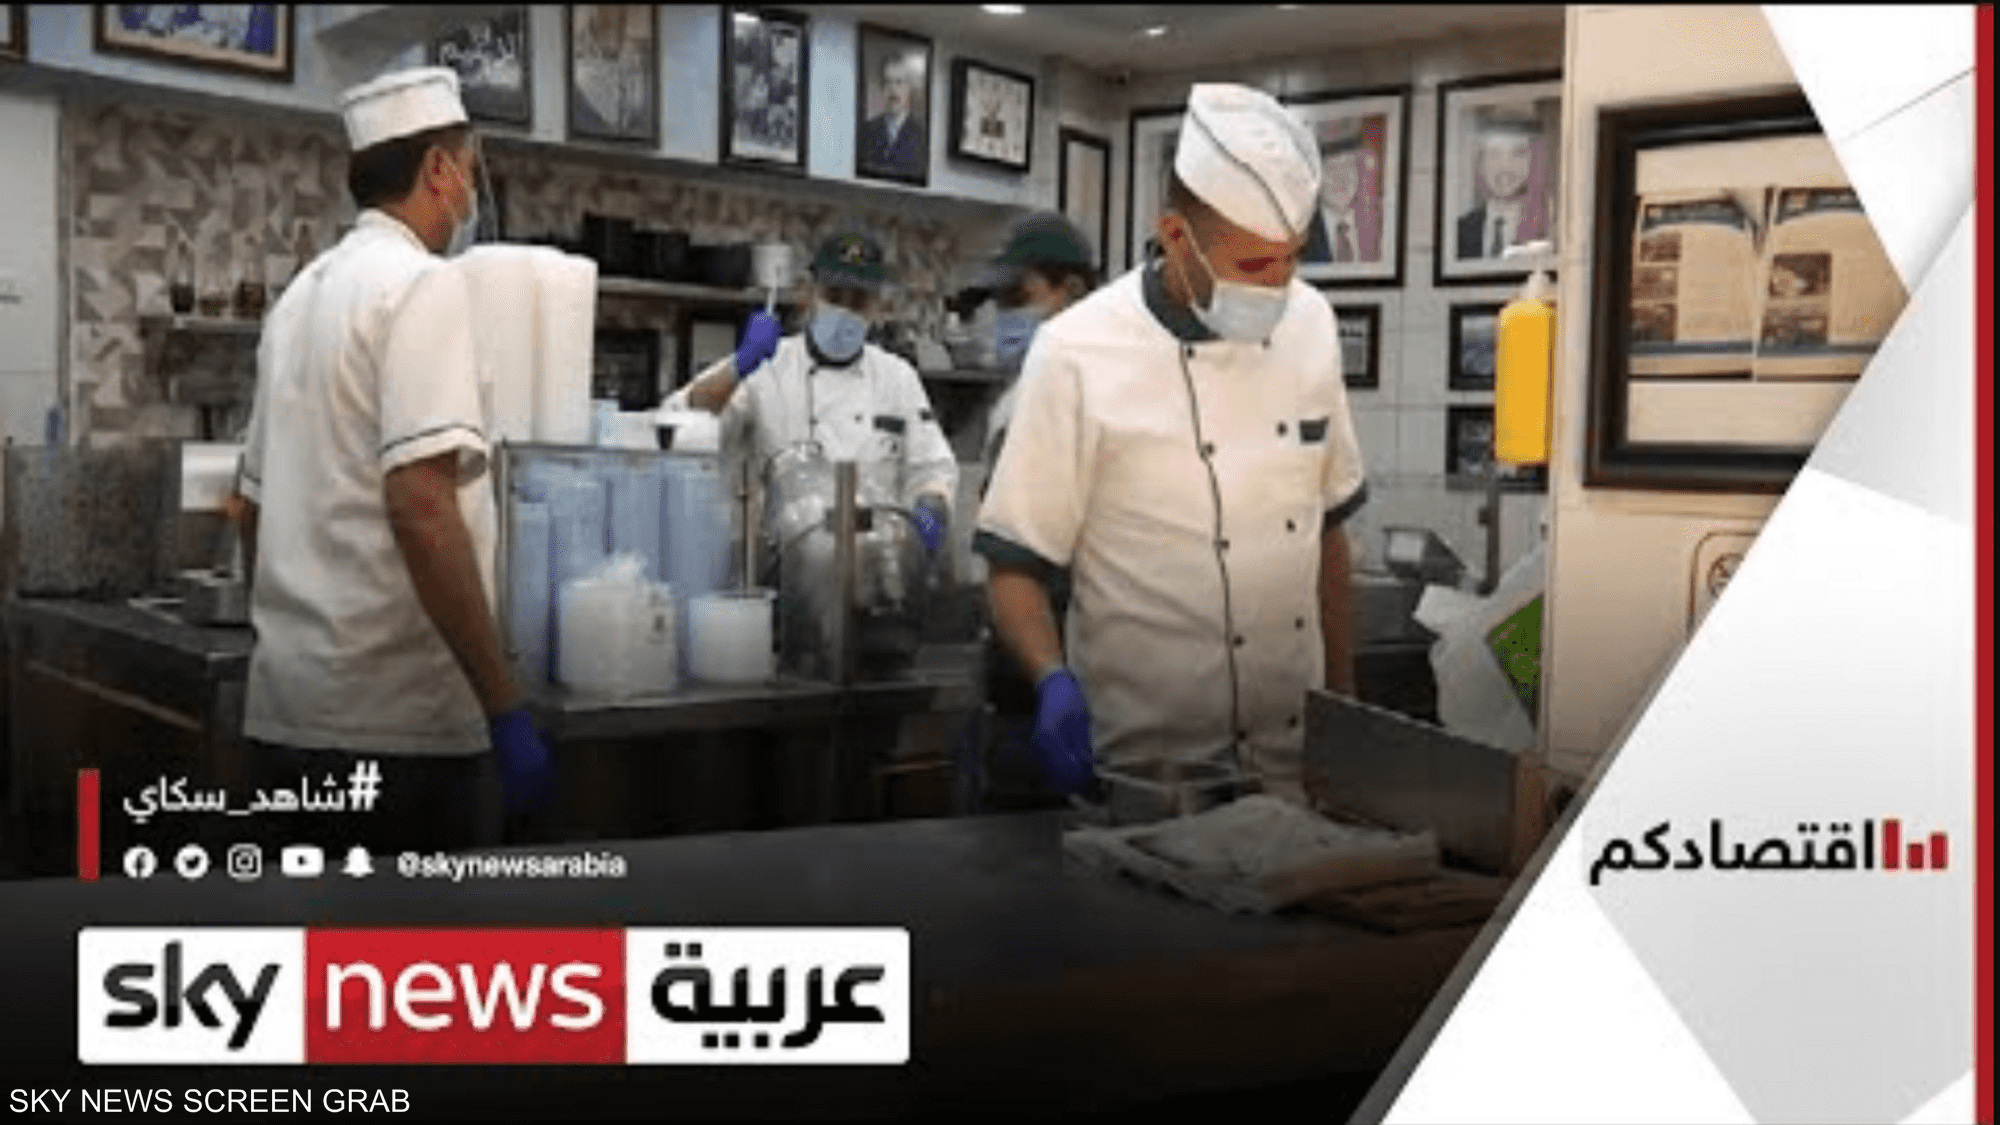 المطاعم الأردنية تواجه مصاعب بسبب حظر التجول